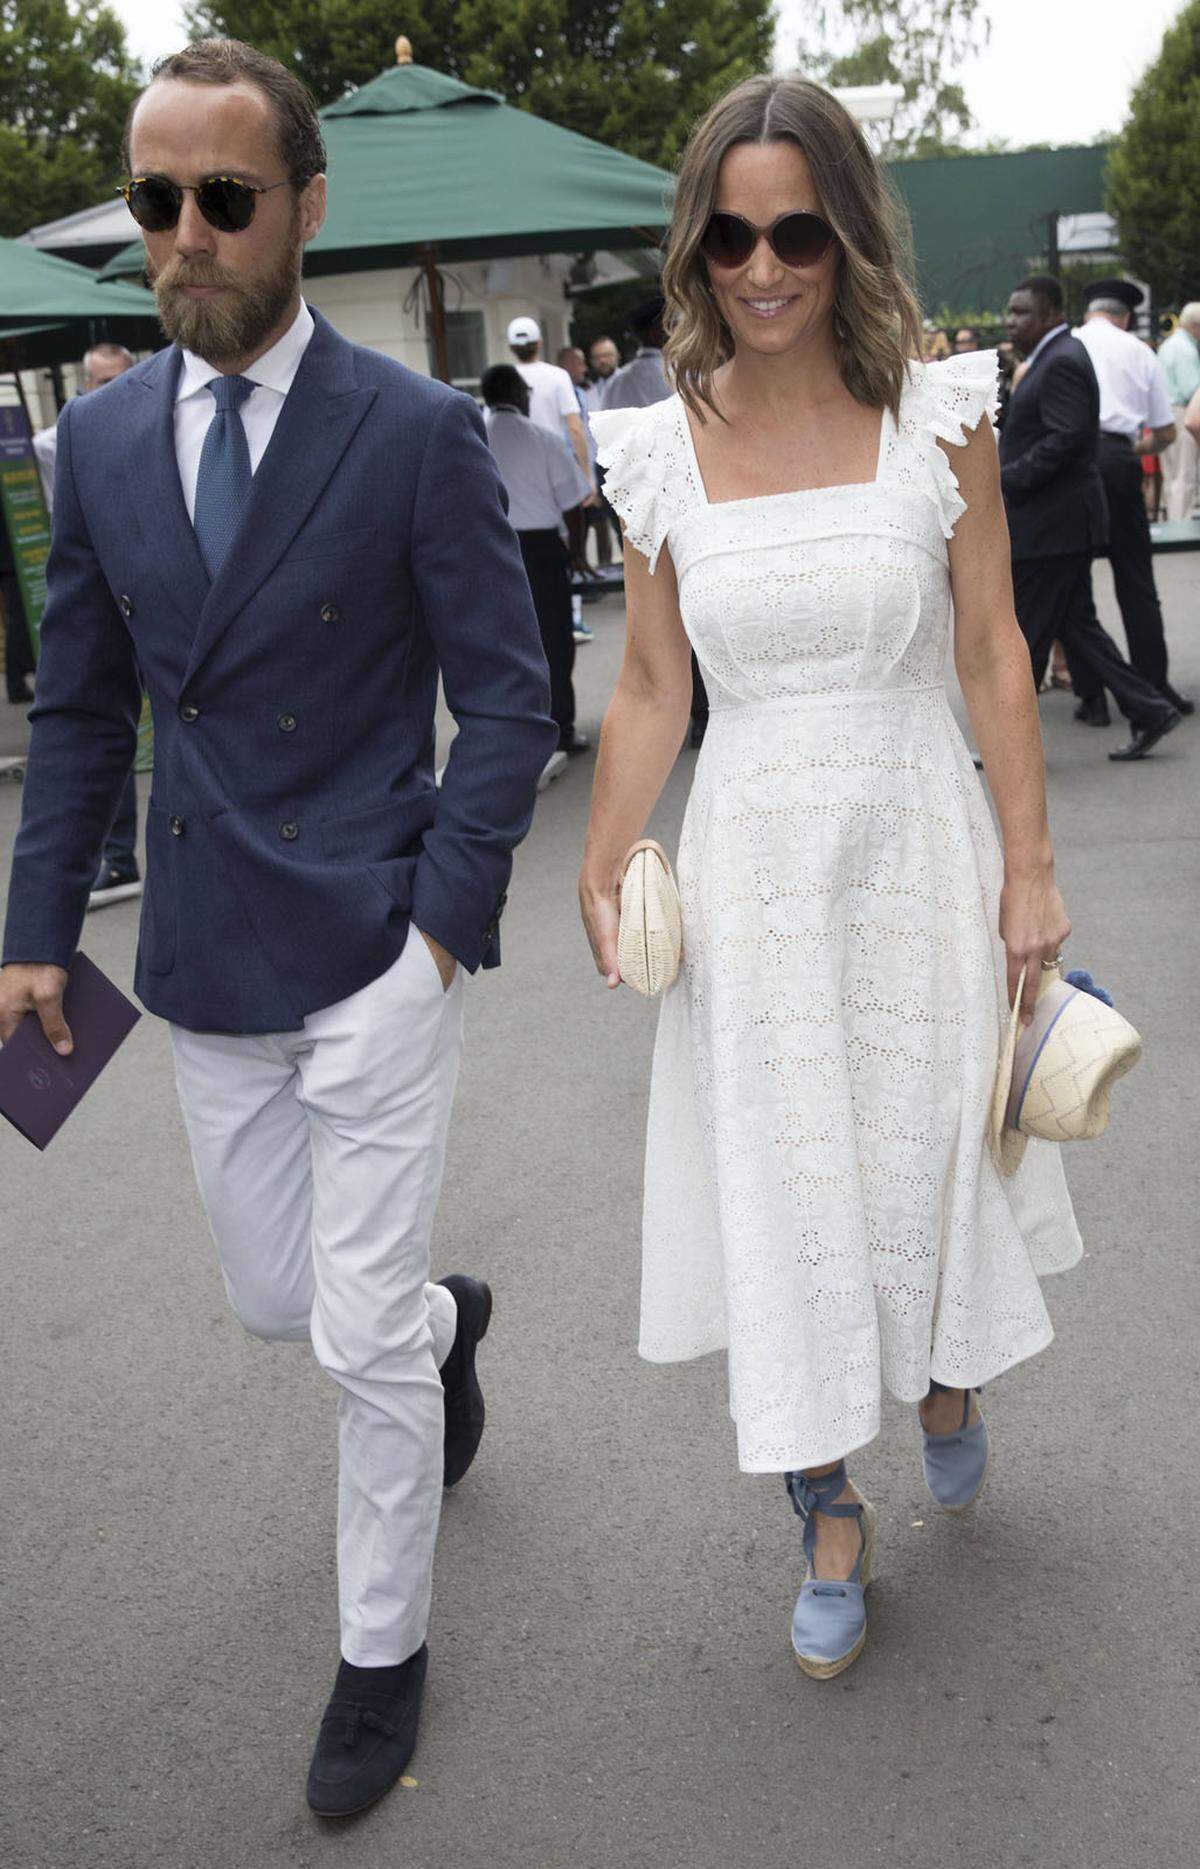 Auch Pippa Middleton, die Schwester von Herzogin Catherine, ist ein großer Tennisfan. Sie kam mit ihrem Bruder James zu einem Turnier.